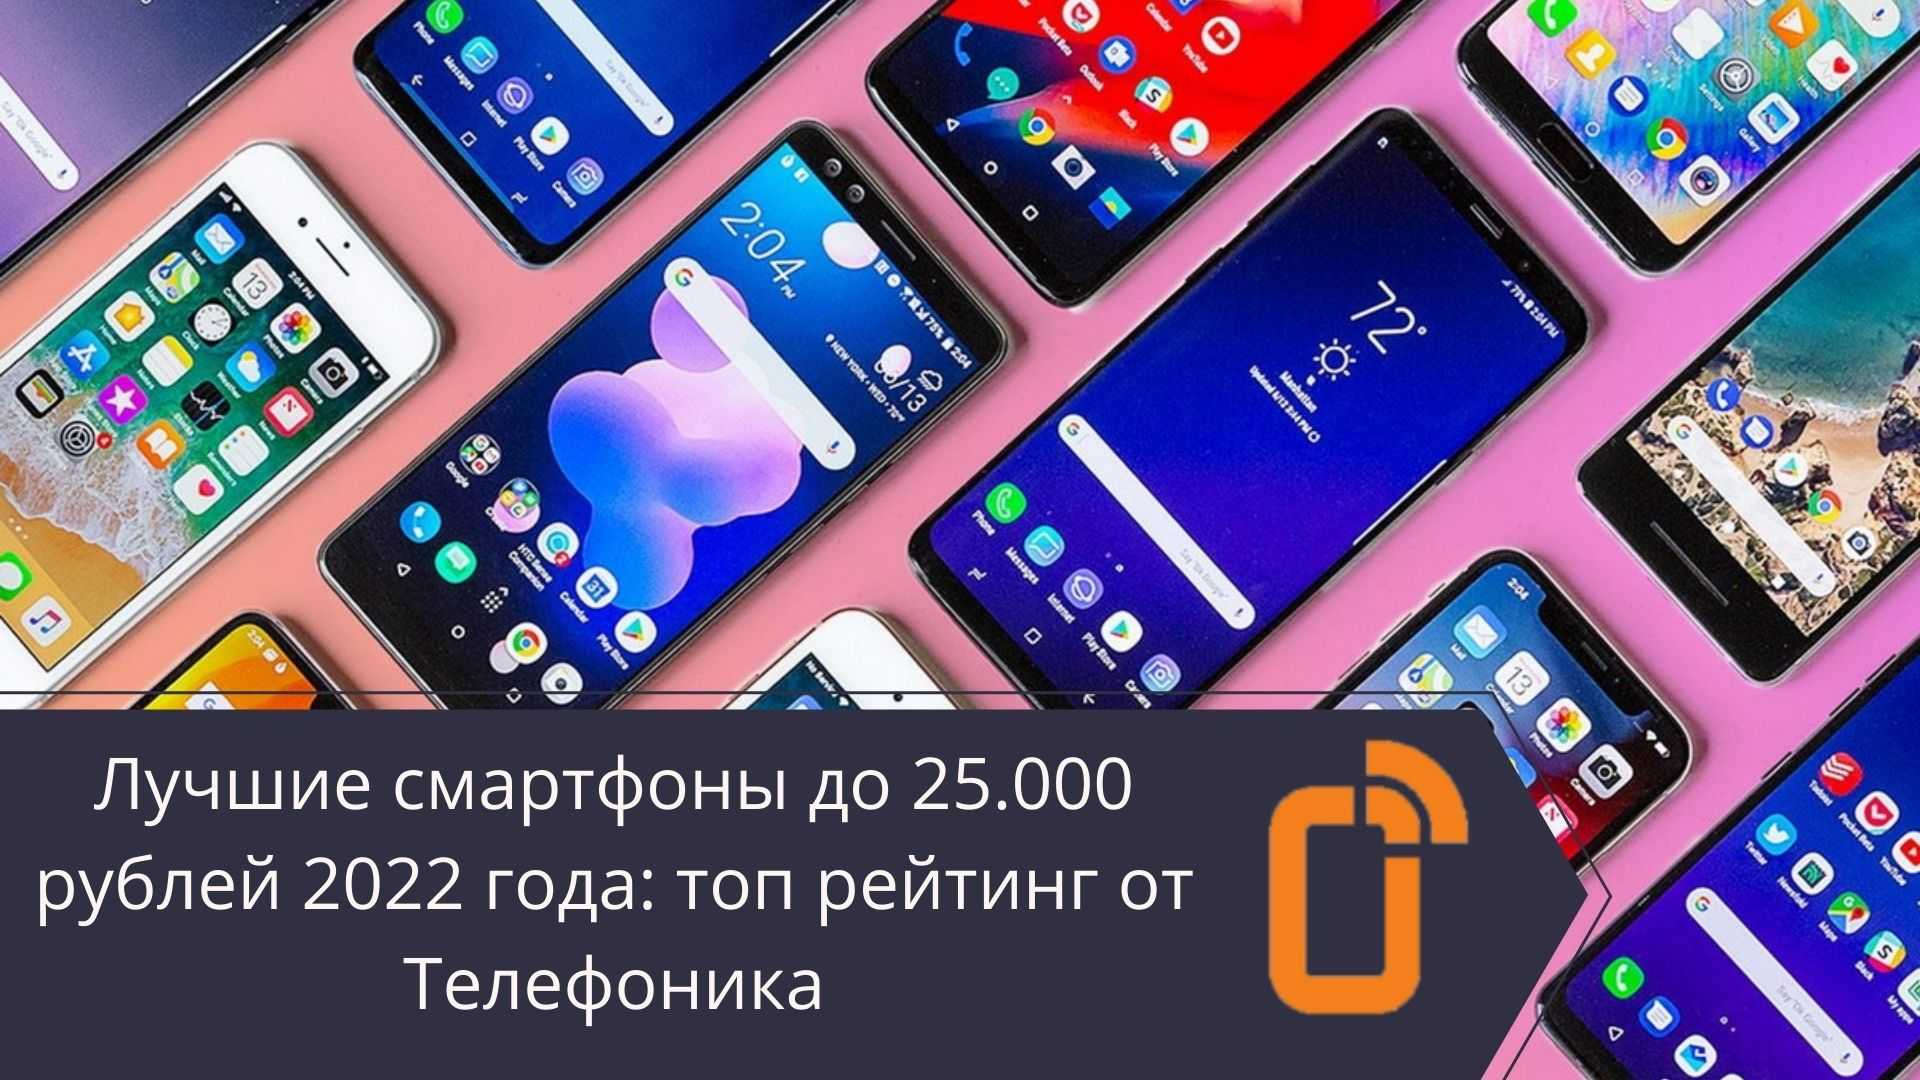 Рейтинг топ-20+ лучших смартфонов до 10 000 рублей 2022-2023 года | экспертные руководства по выбору техники